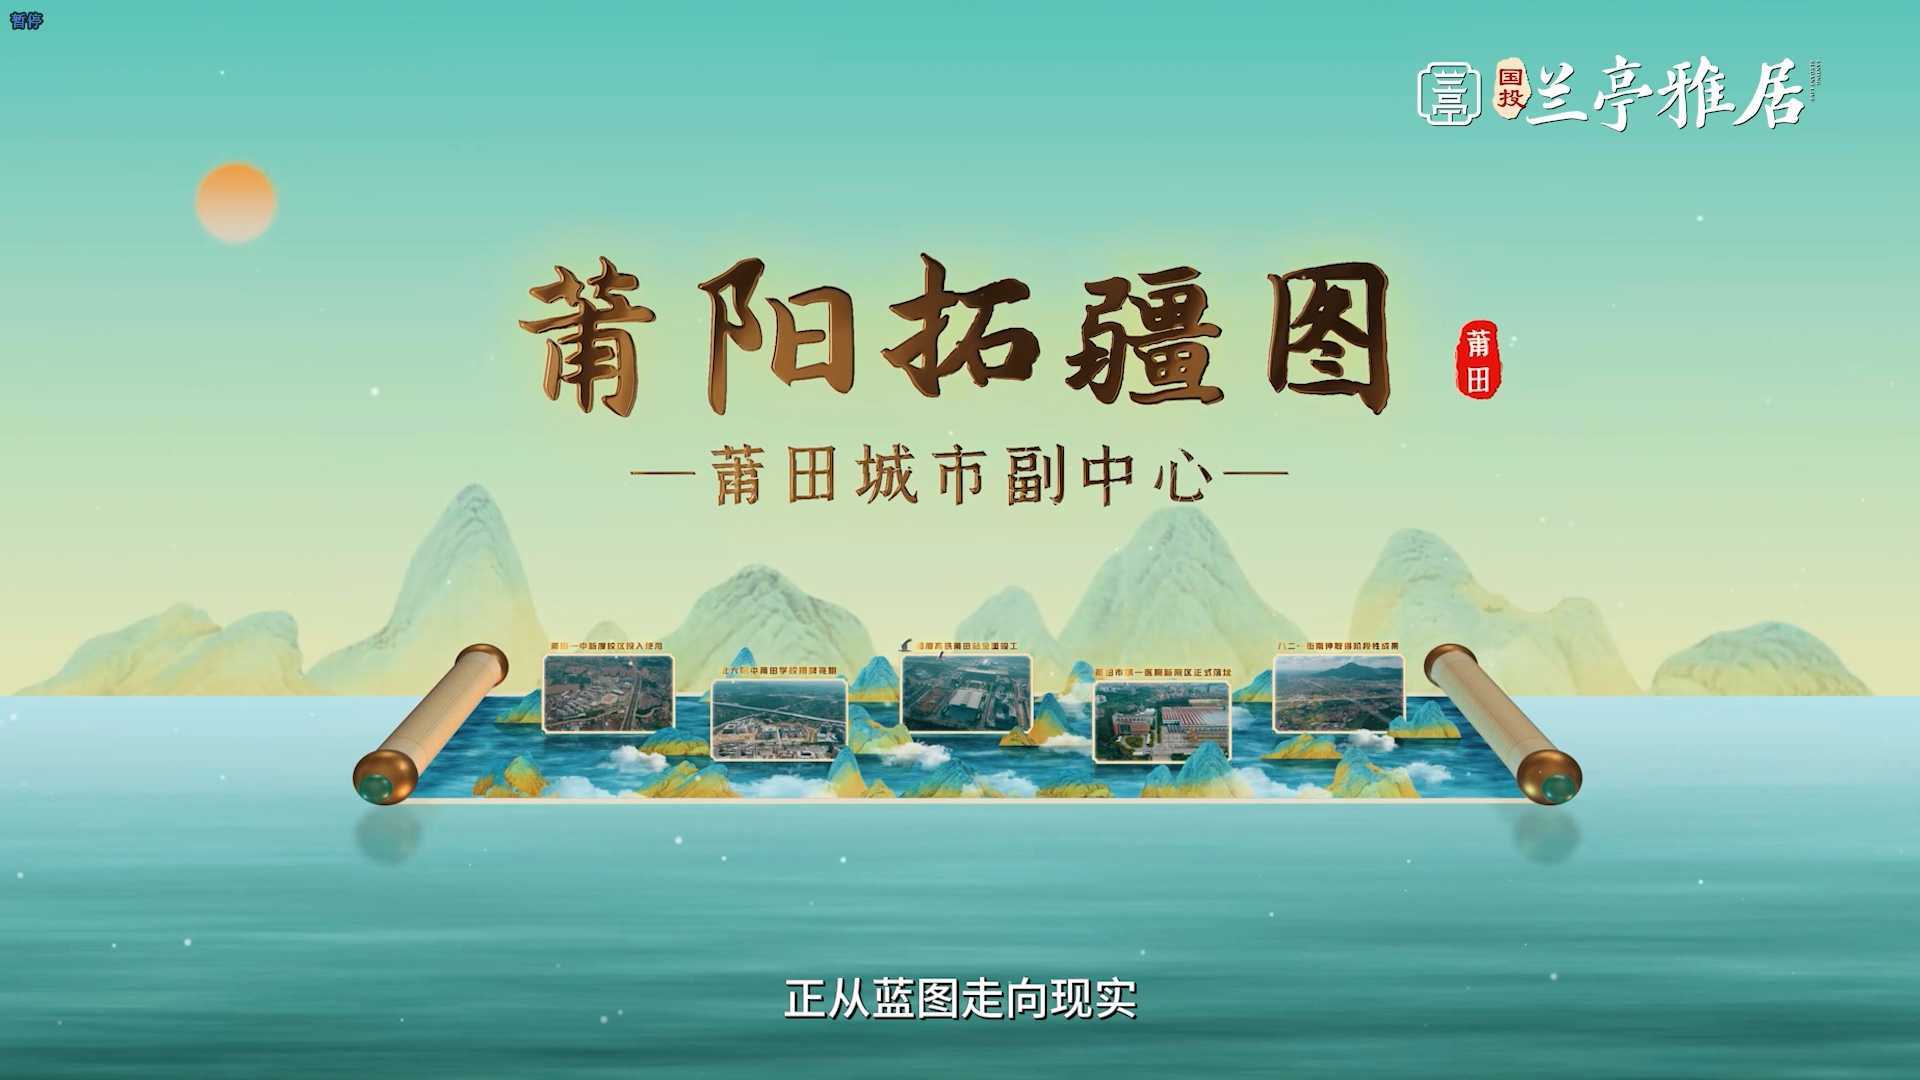 聚点影业  x 福建海峡置业丨《这是莆田》— 兰亭雅居宣传片